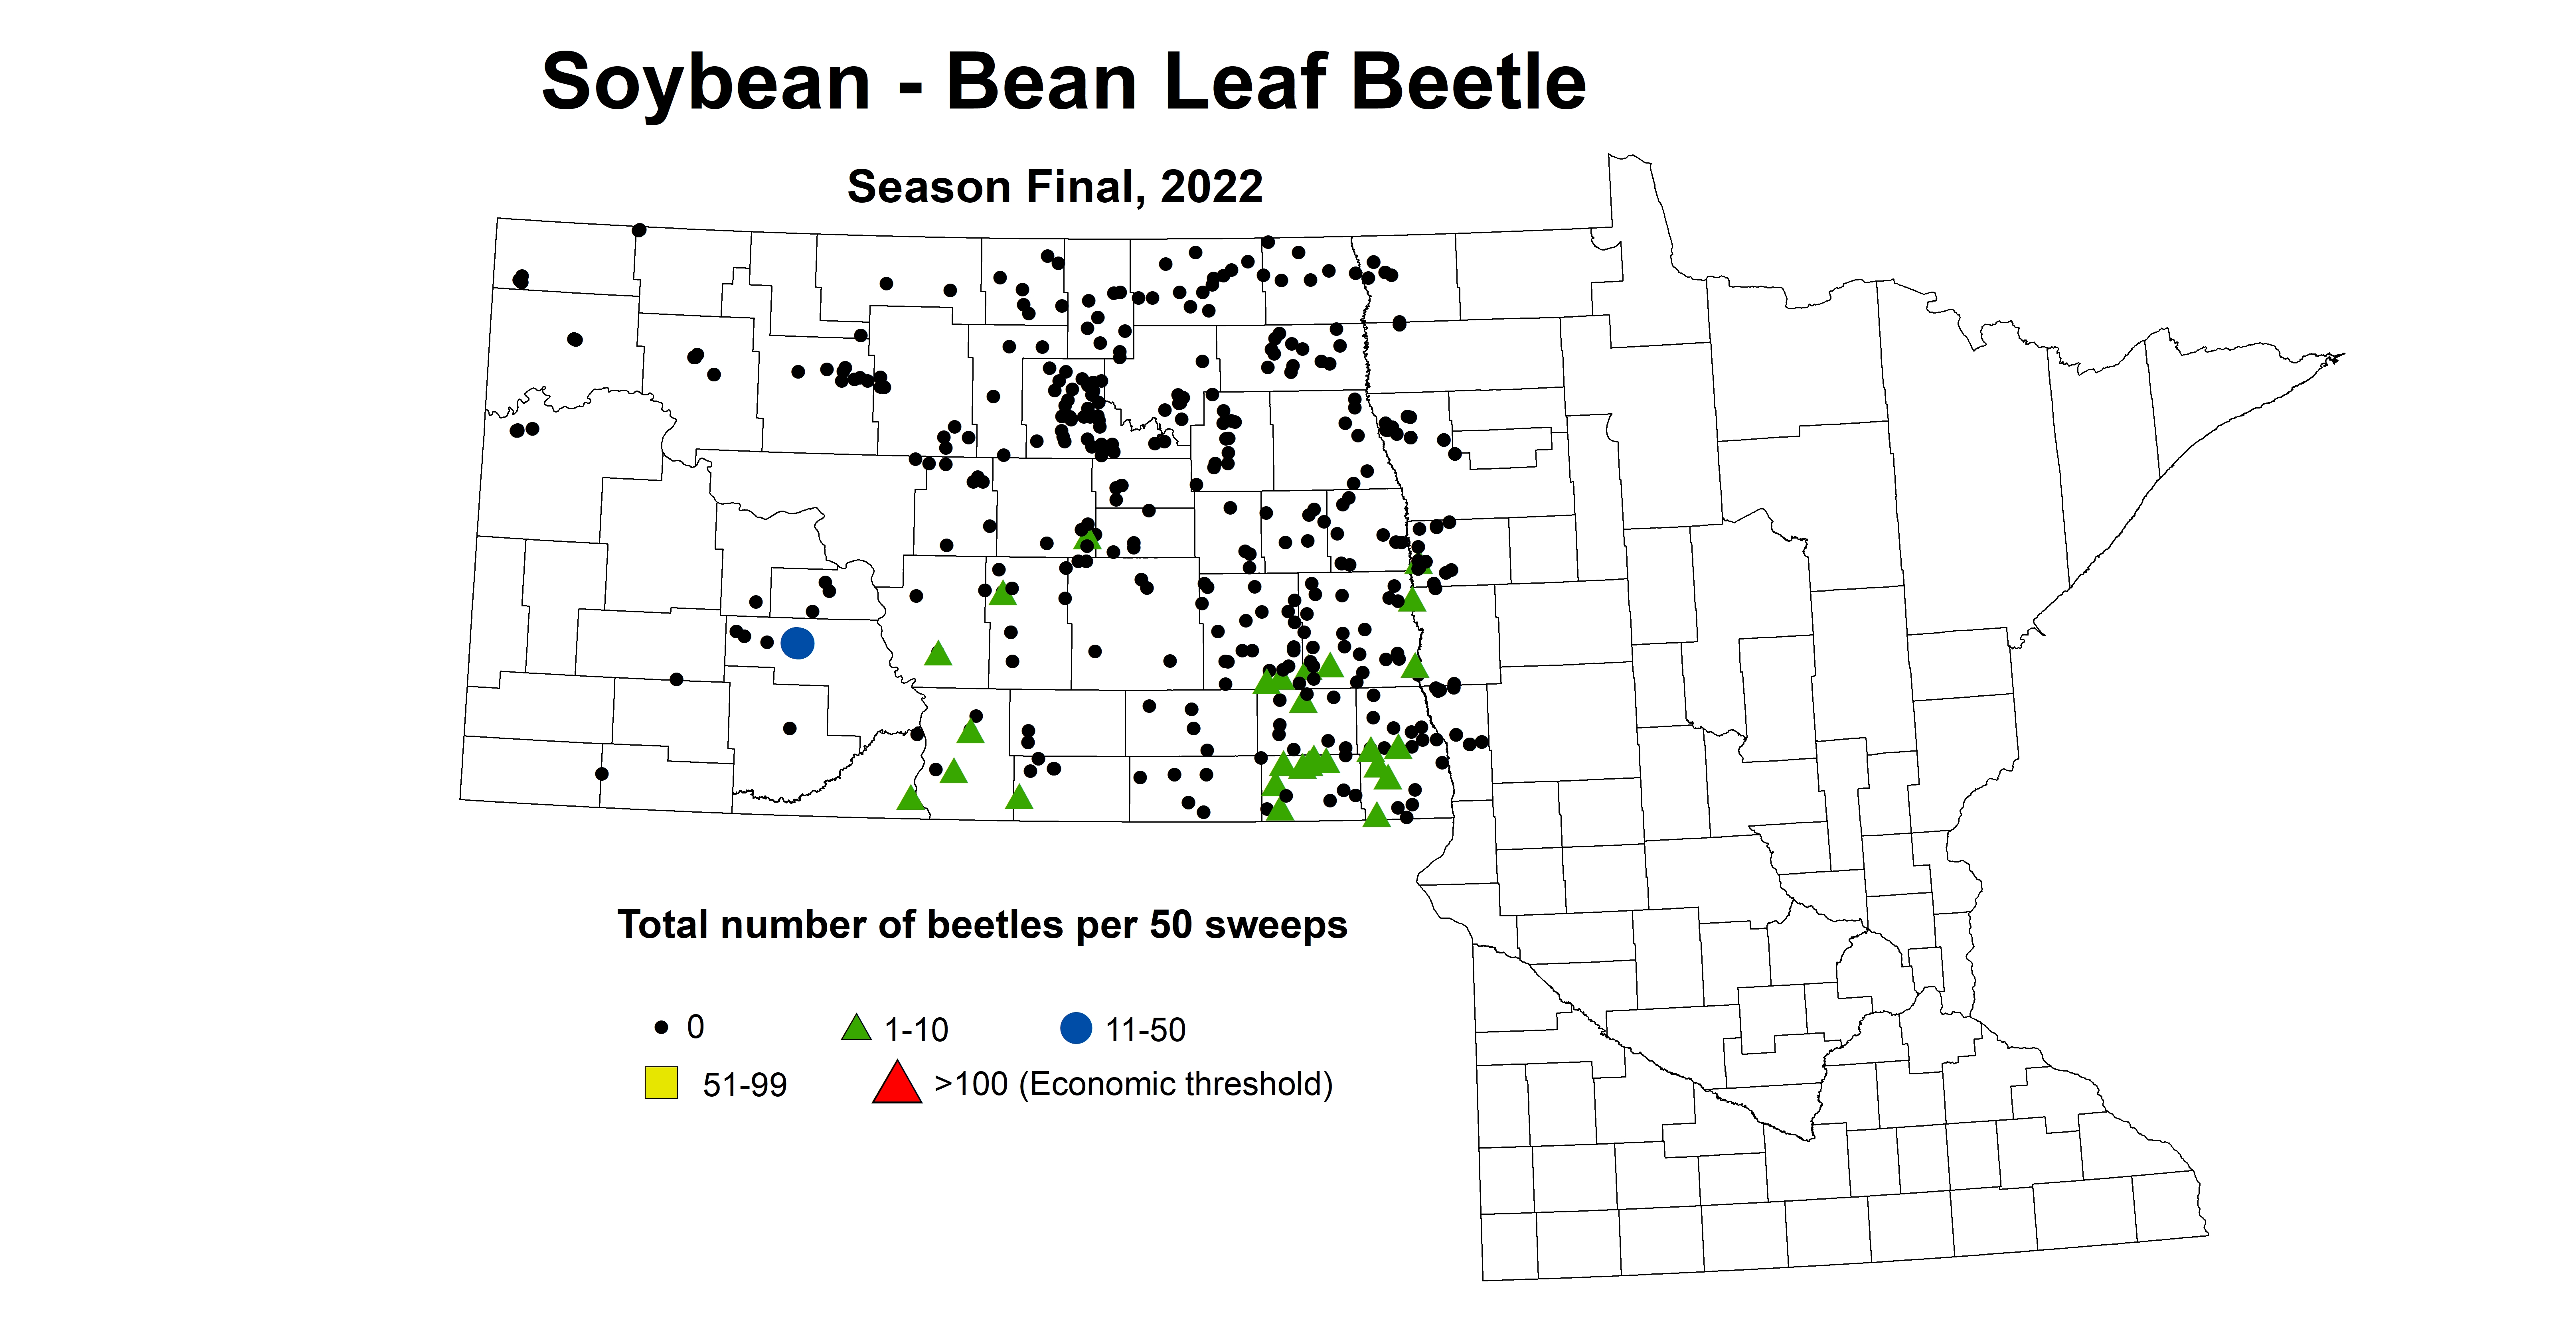 soybean total number of beetles per 50 sweeps 2022 seasonFinal